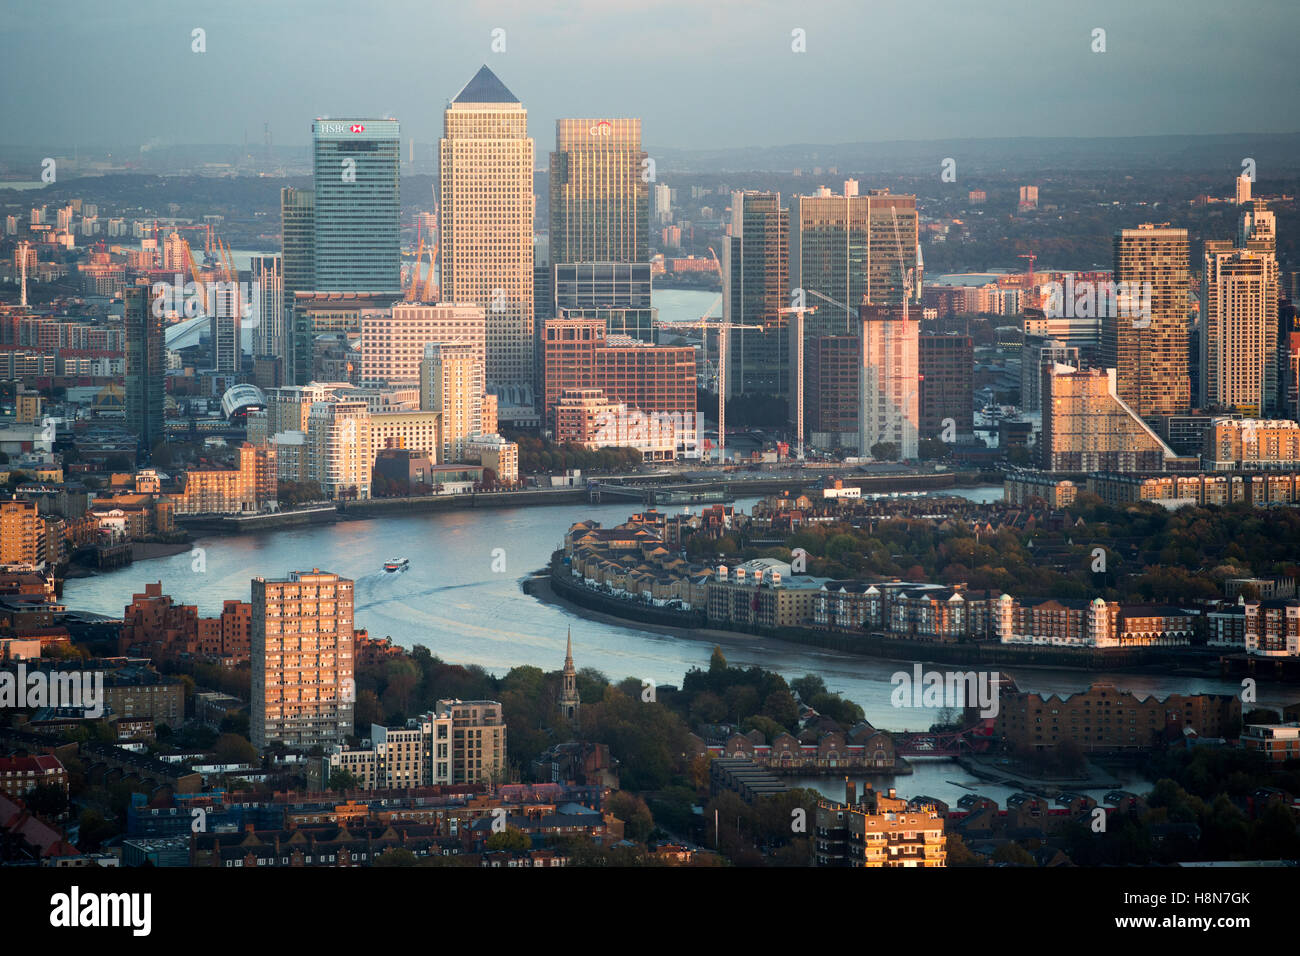 Vista de Canary Wharf y del distrito financiero al atardecer mirando al oriente de la ciudad de Londres. Foto de stock